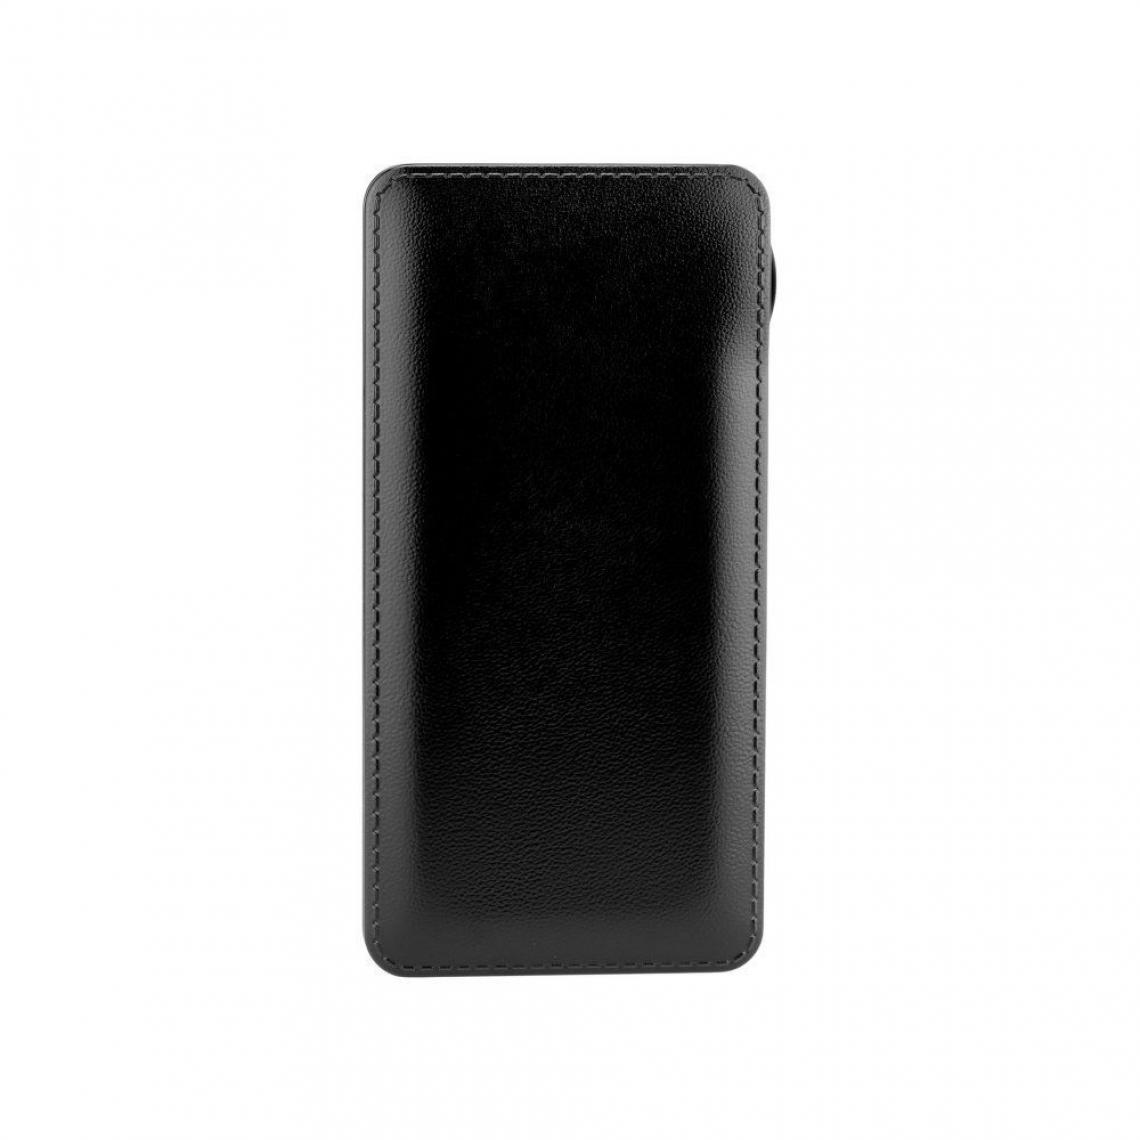 Ozzzo - Chargeur batterie externe 20000 mAh powerbank ozzzo noir pour Chuwi Hi9 Plus - Autres accessoires smartphone